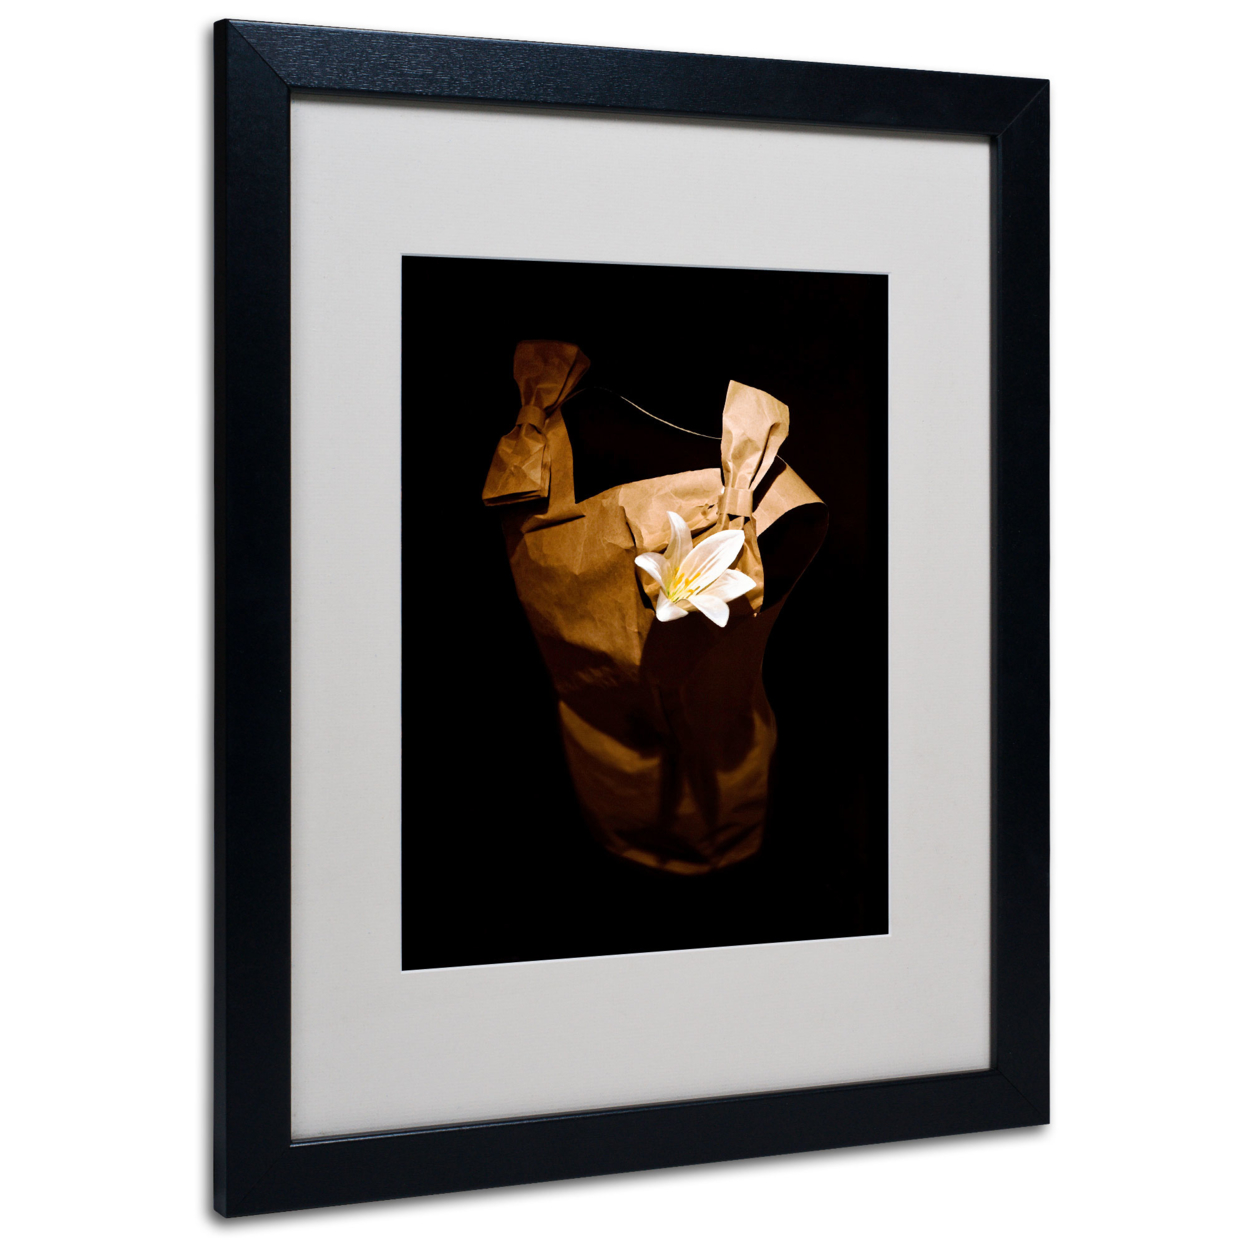 Roderick Stevens 'White Flower' Black Wooden Framed Art 18 X 22 Inches